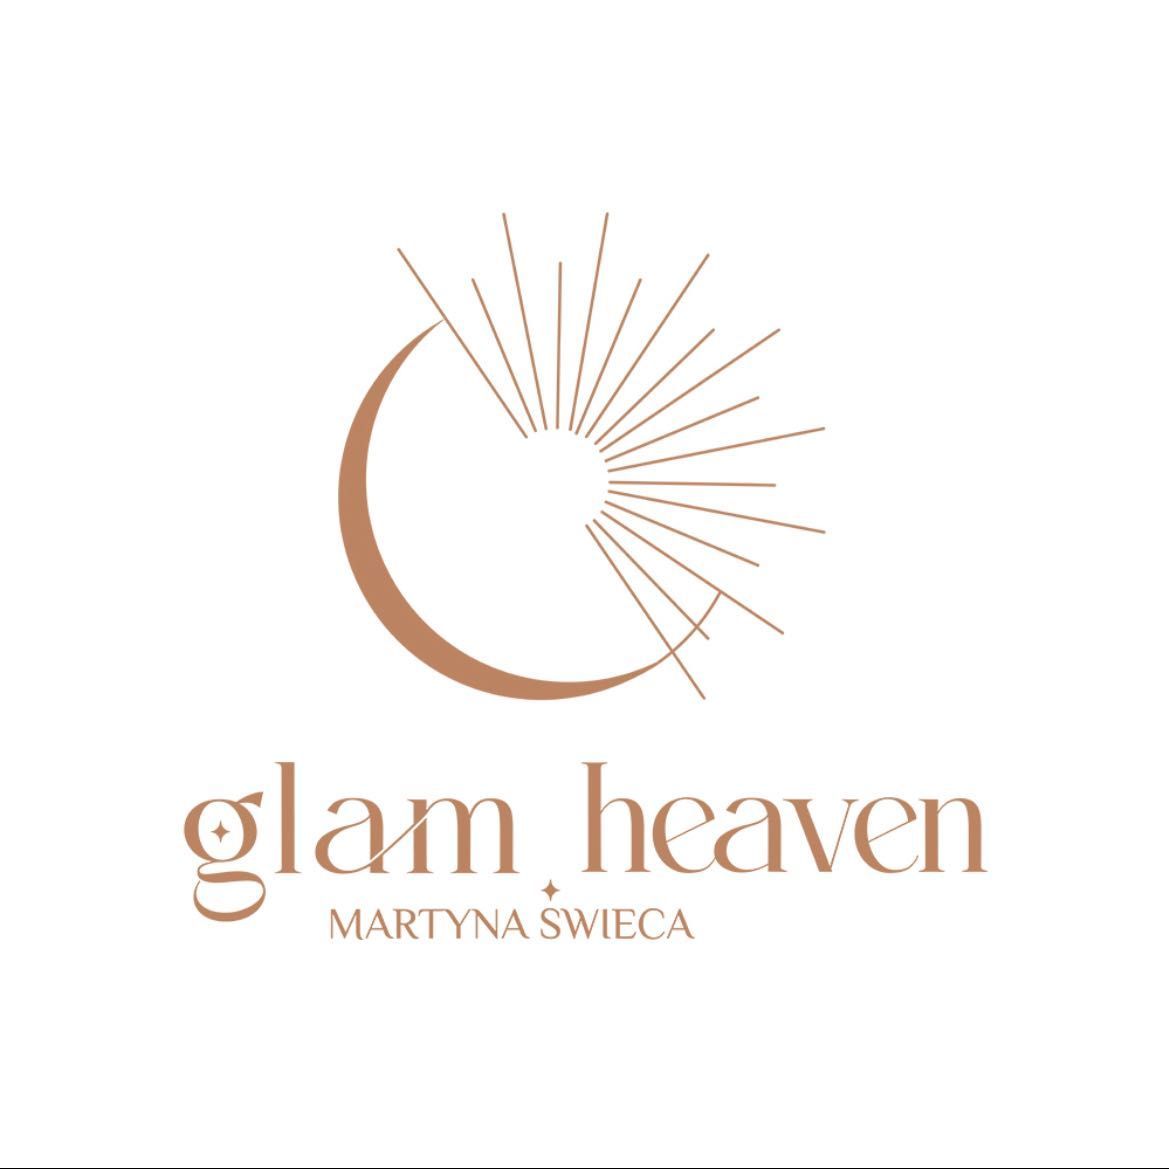 Glam Heaven Martyna Świeca/ Świeca Barber, Beskidzka 59, 35-083, Rzeszów